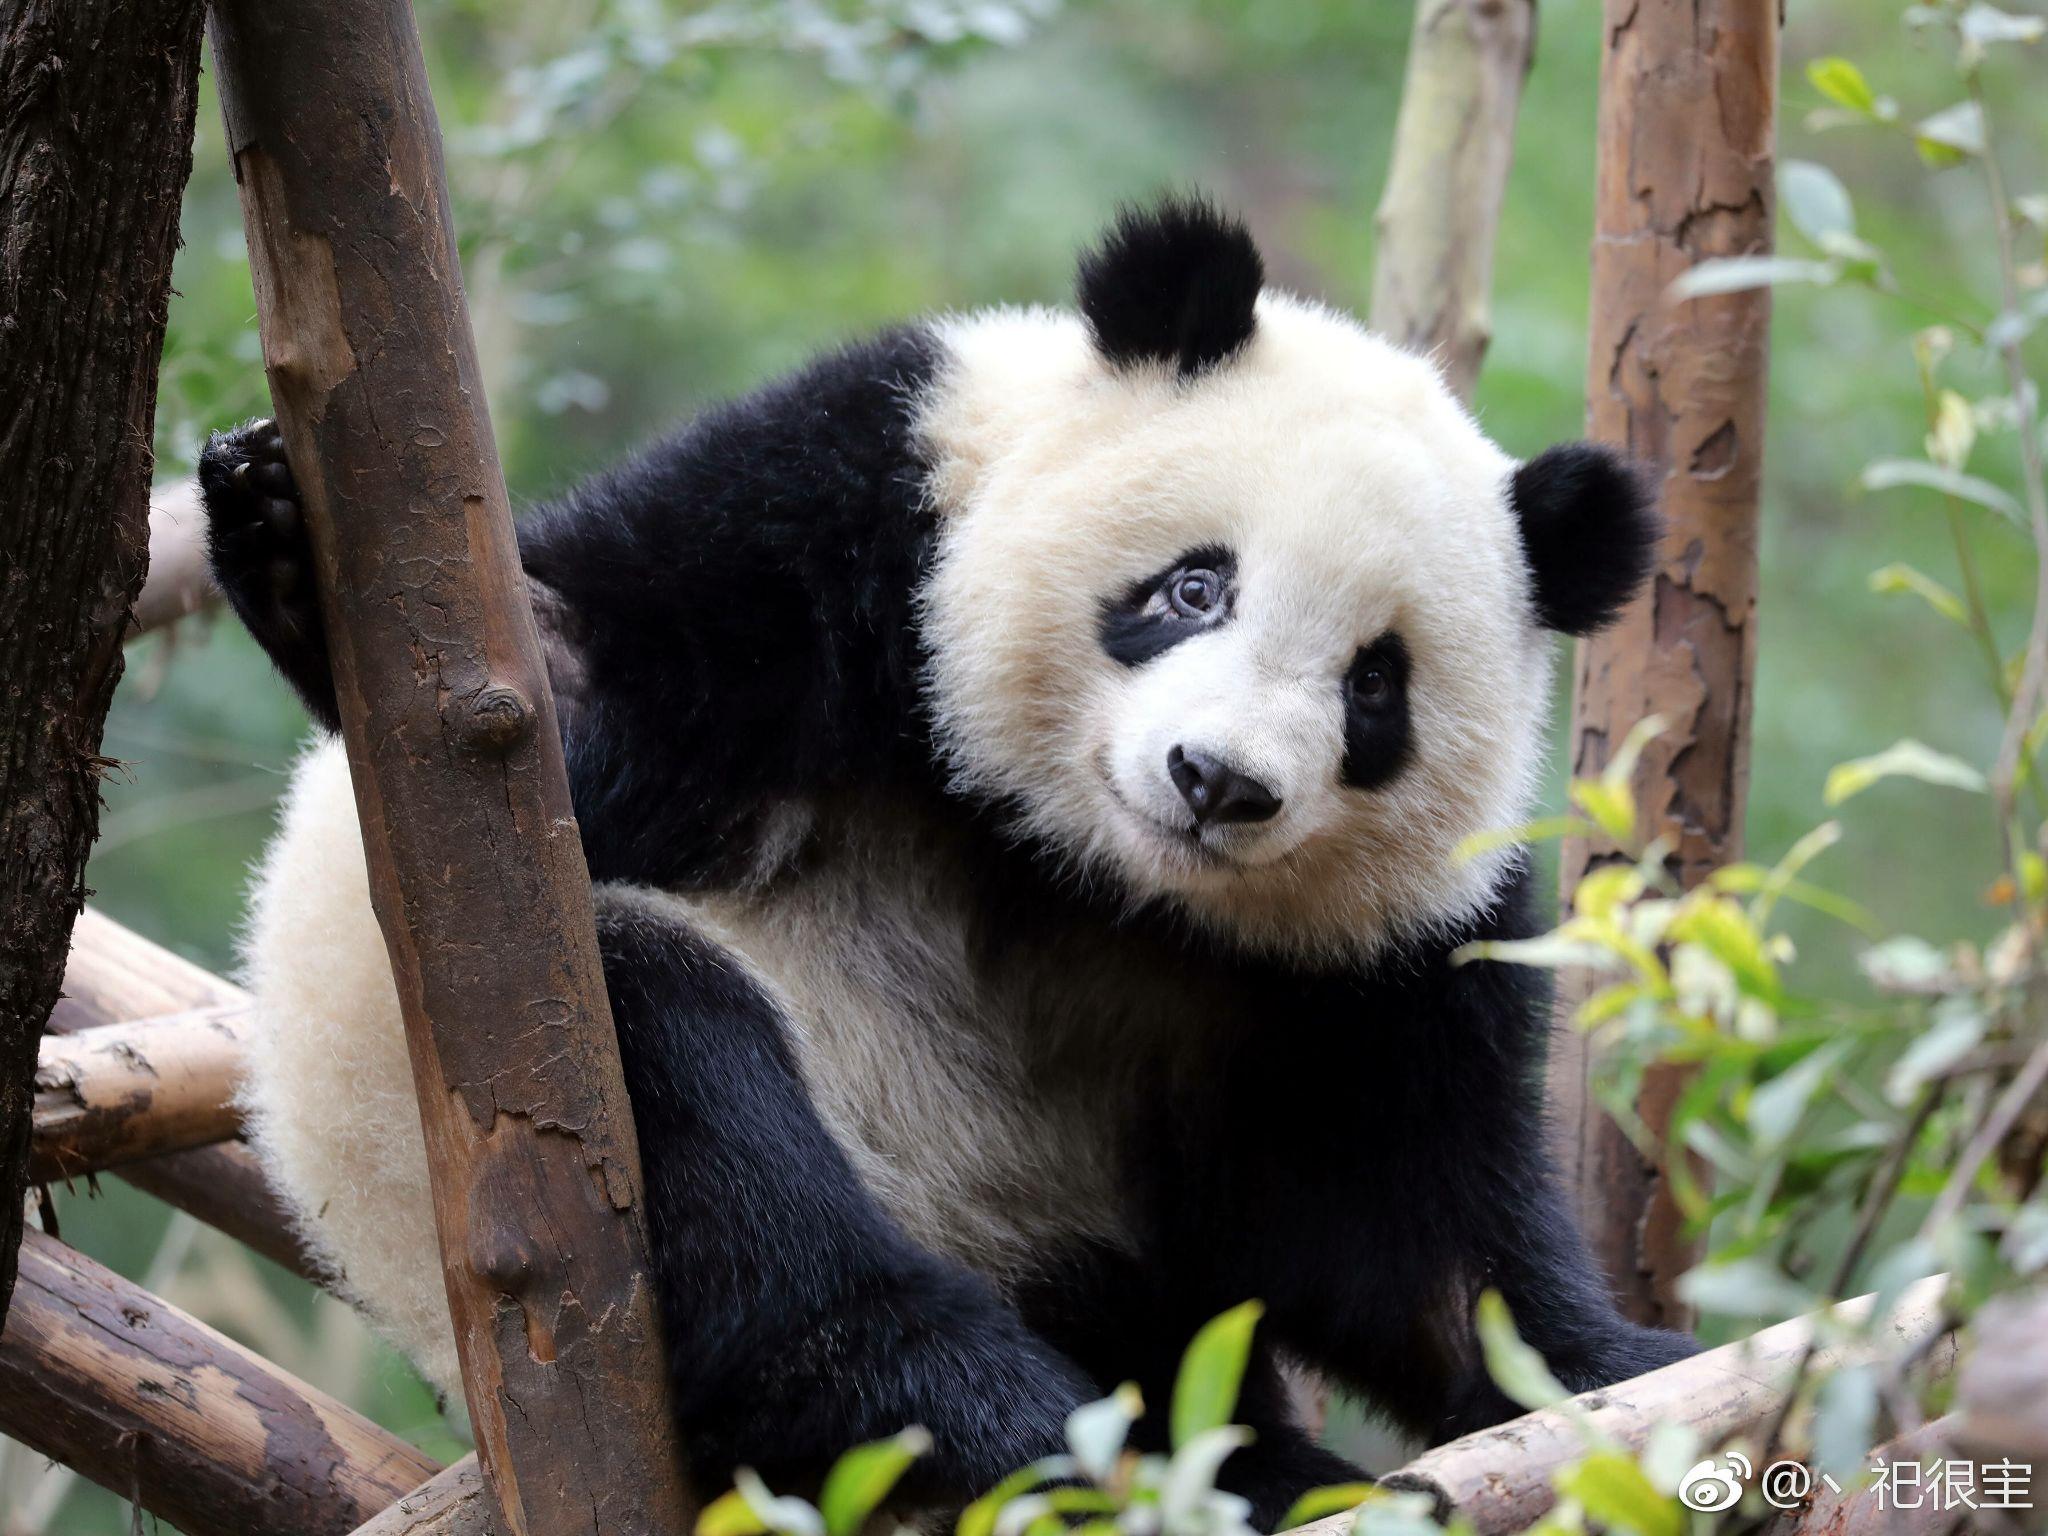 大熊猫，熊熊猫 库存图片. 图片 包括有 棍子, 哺乳动物, 公园, 熊猫, 外出, 砍伐森林, 毛皮 - 132920967